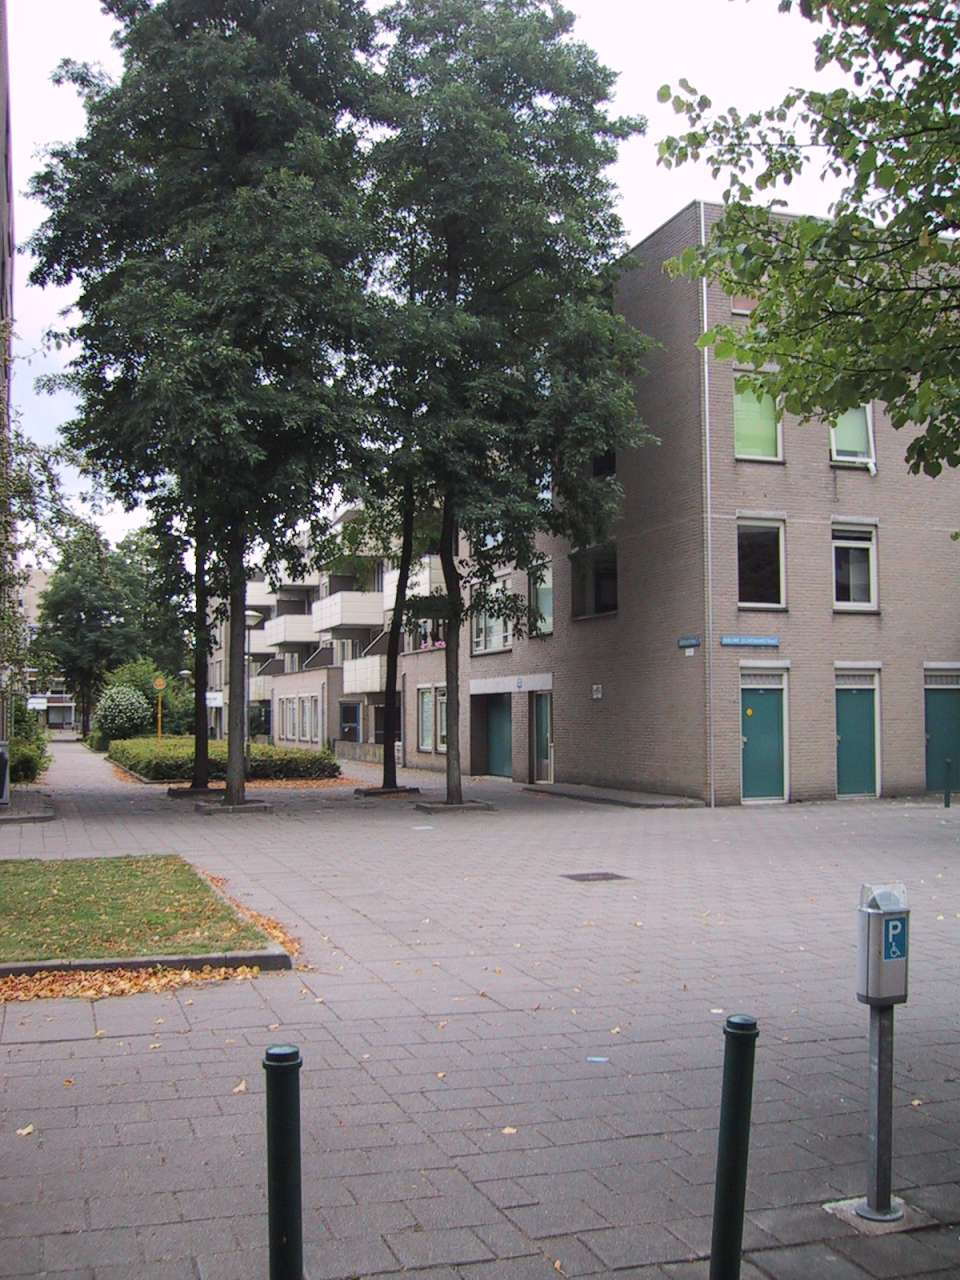 Gasthuisstraat 126, 4811 MH Breda, Nederland